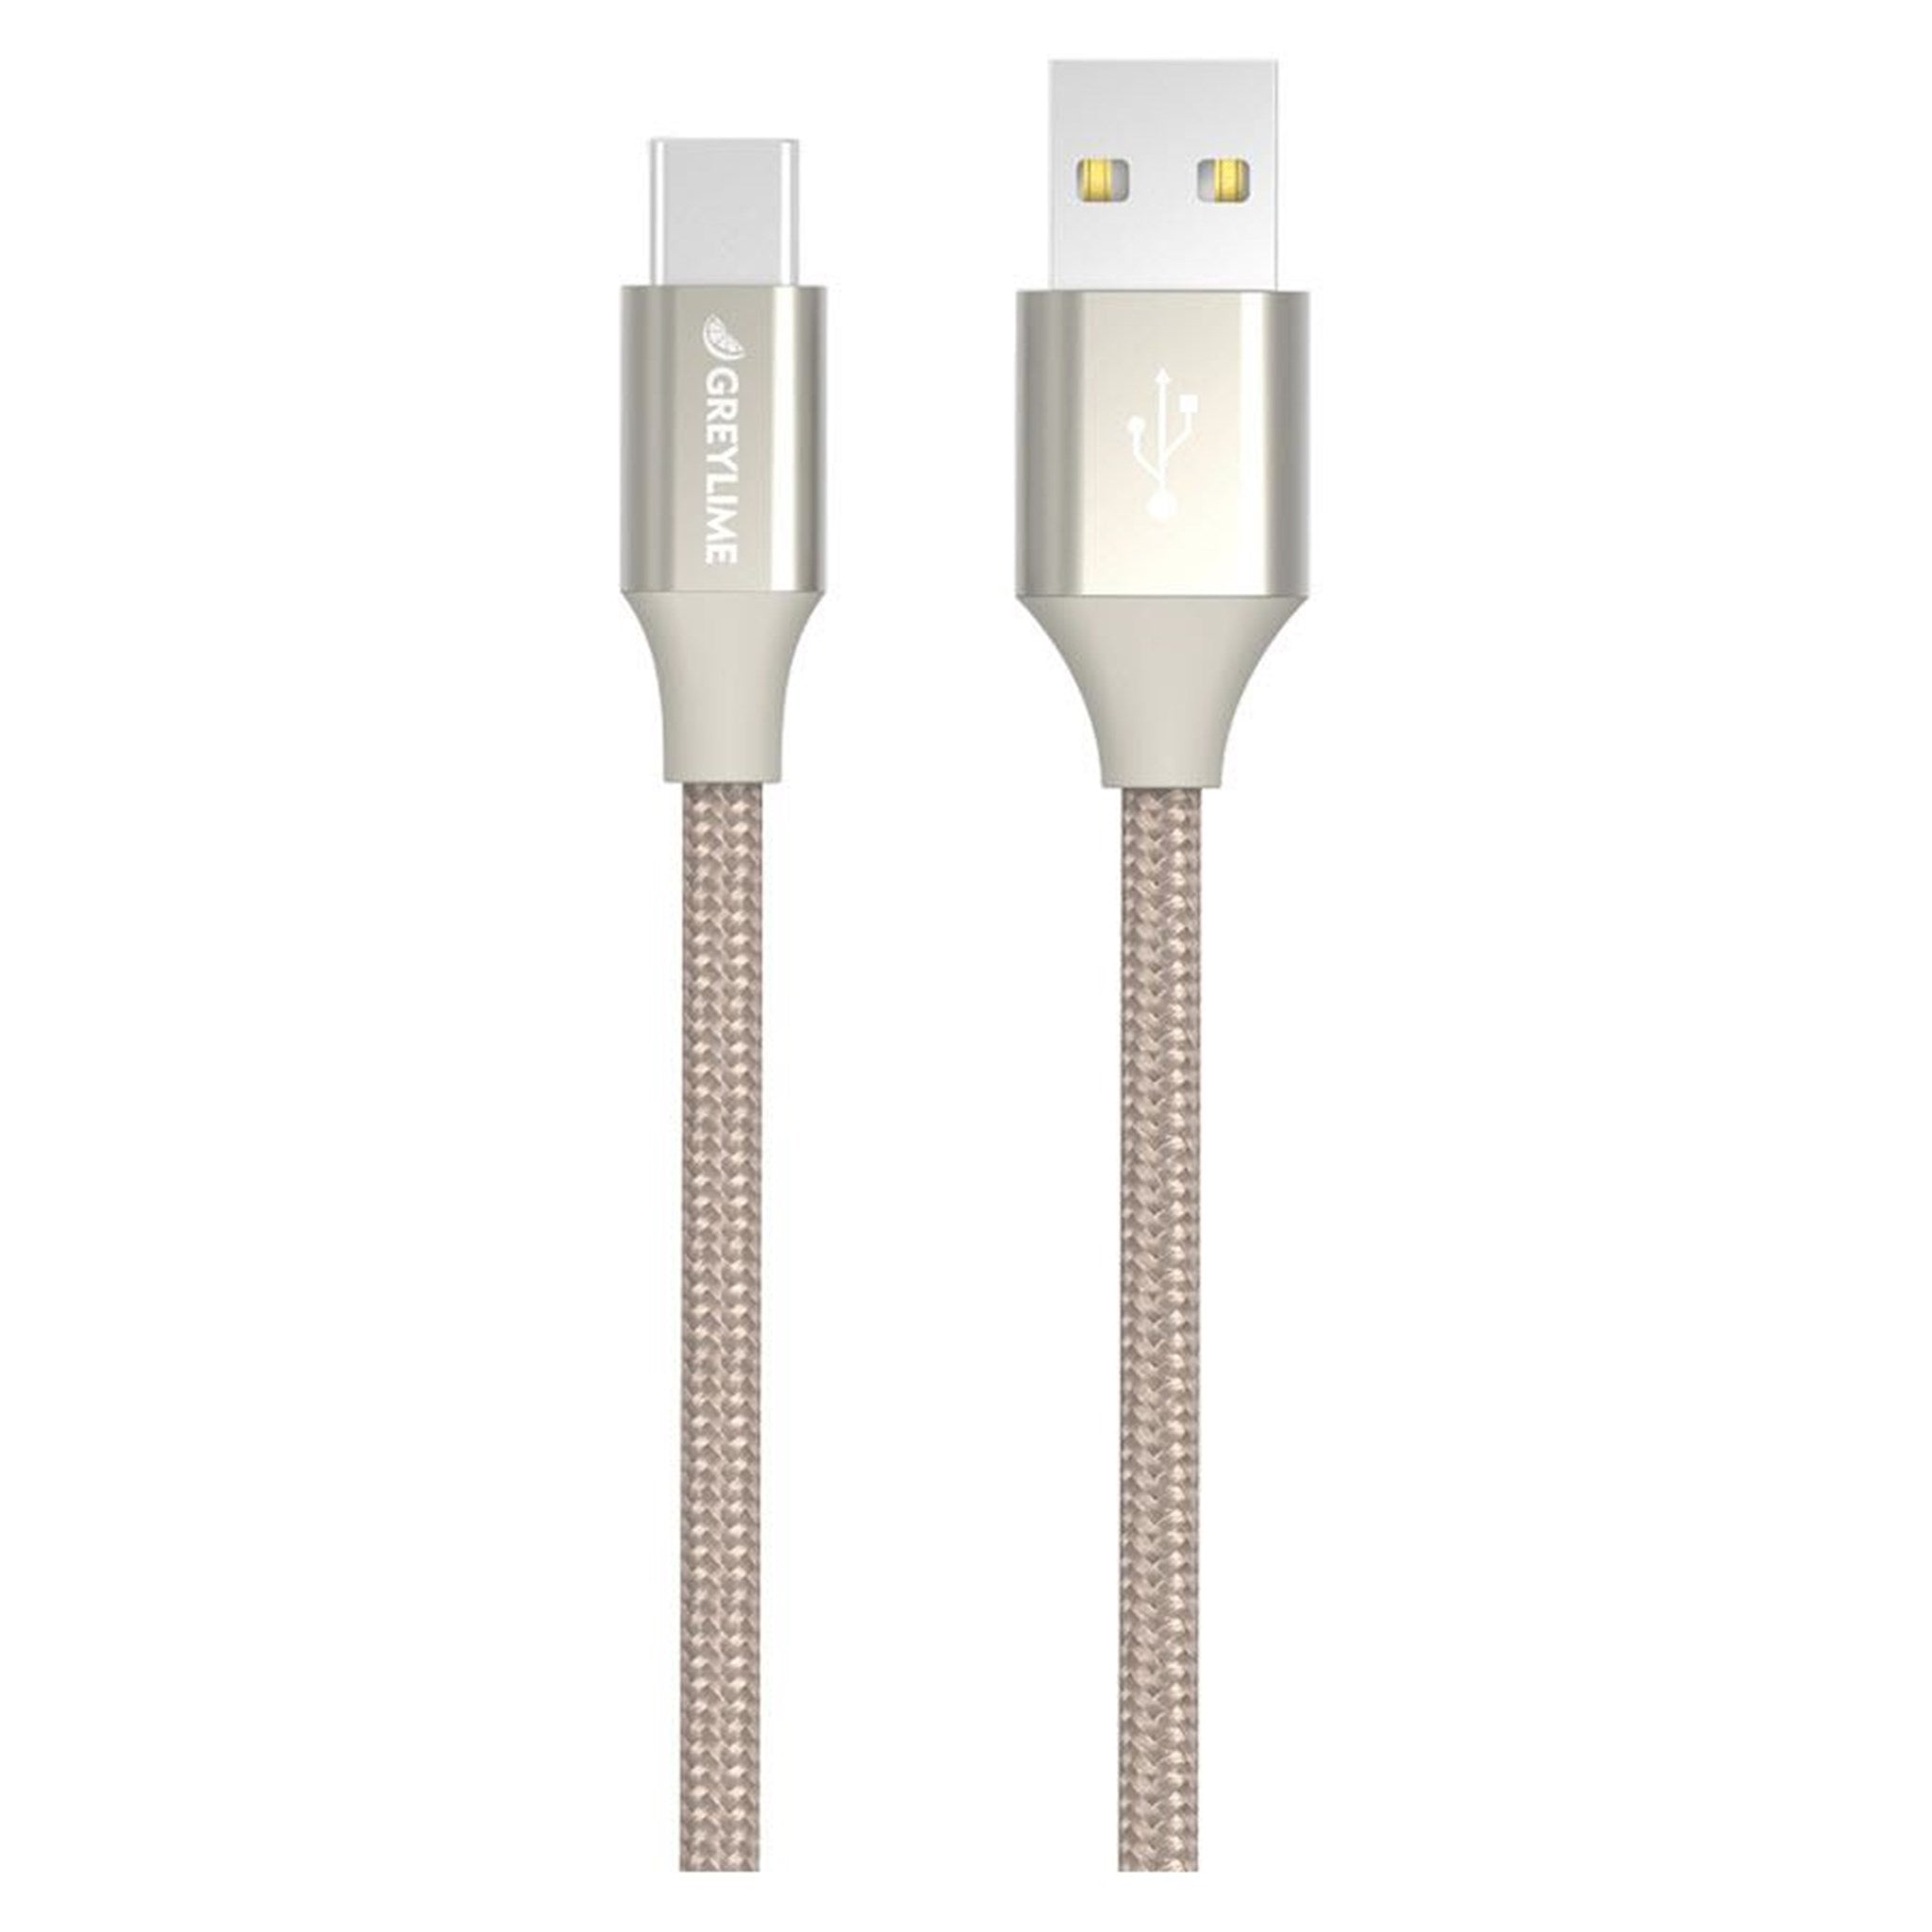 Billede af GreyLime Braided USB-A til USB-C Kabel Beige 2 m hos GreyLime